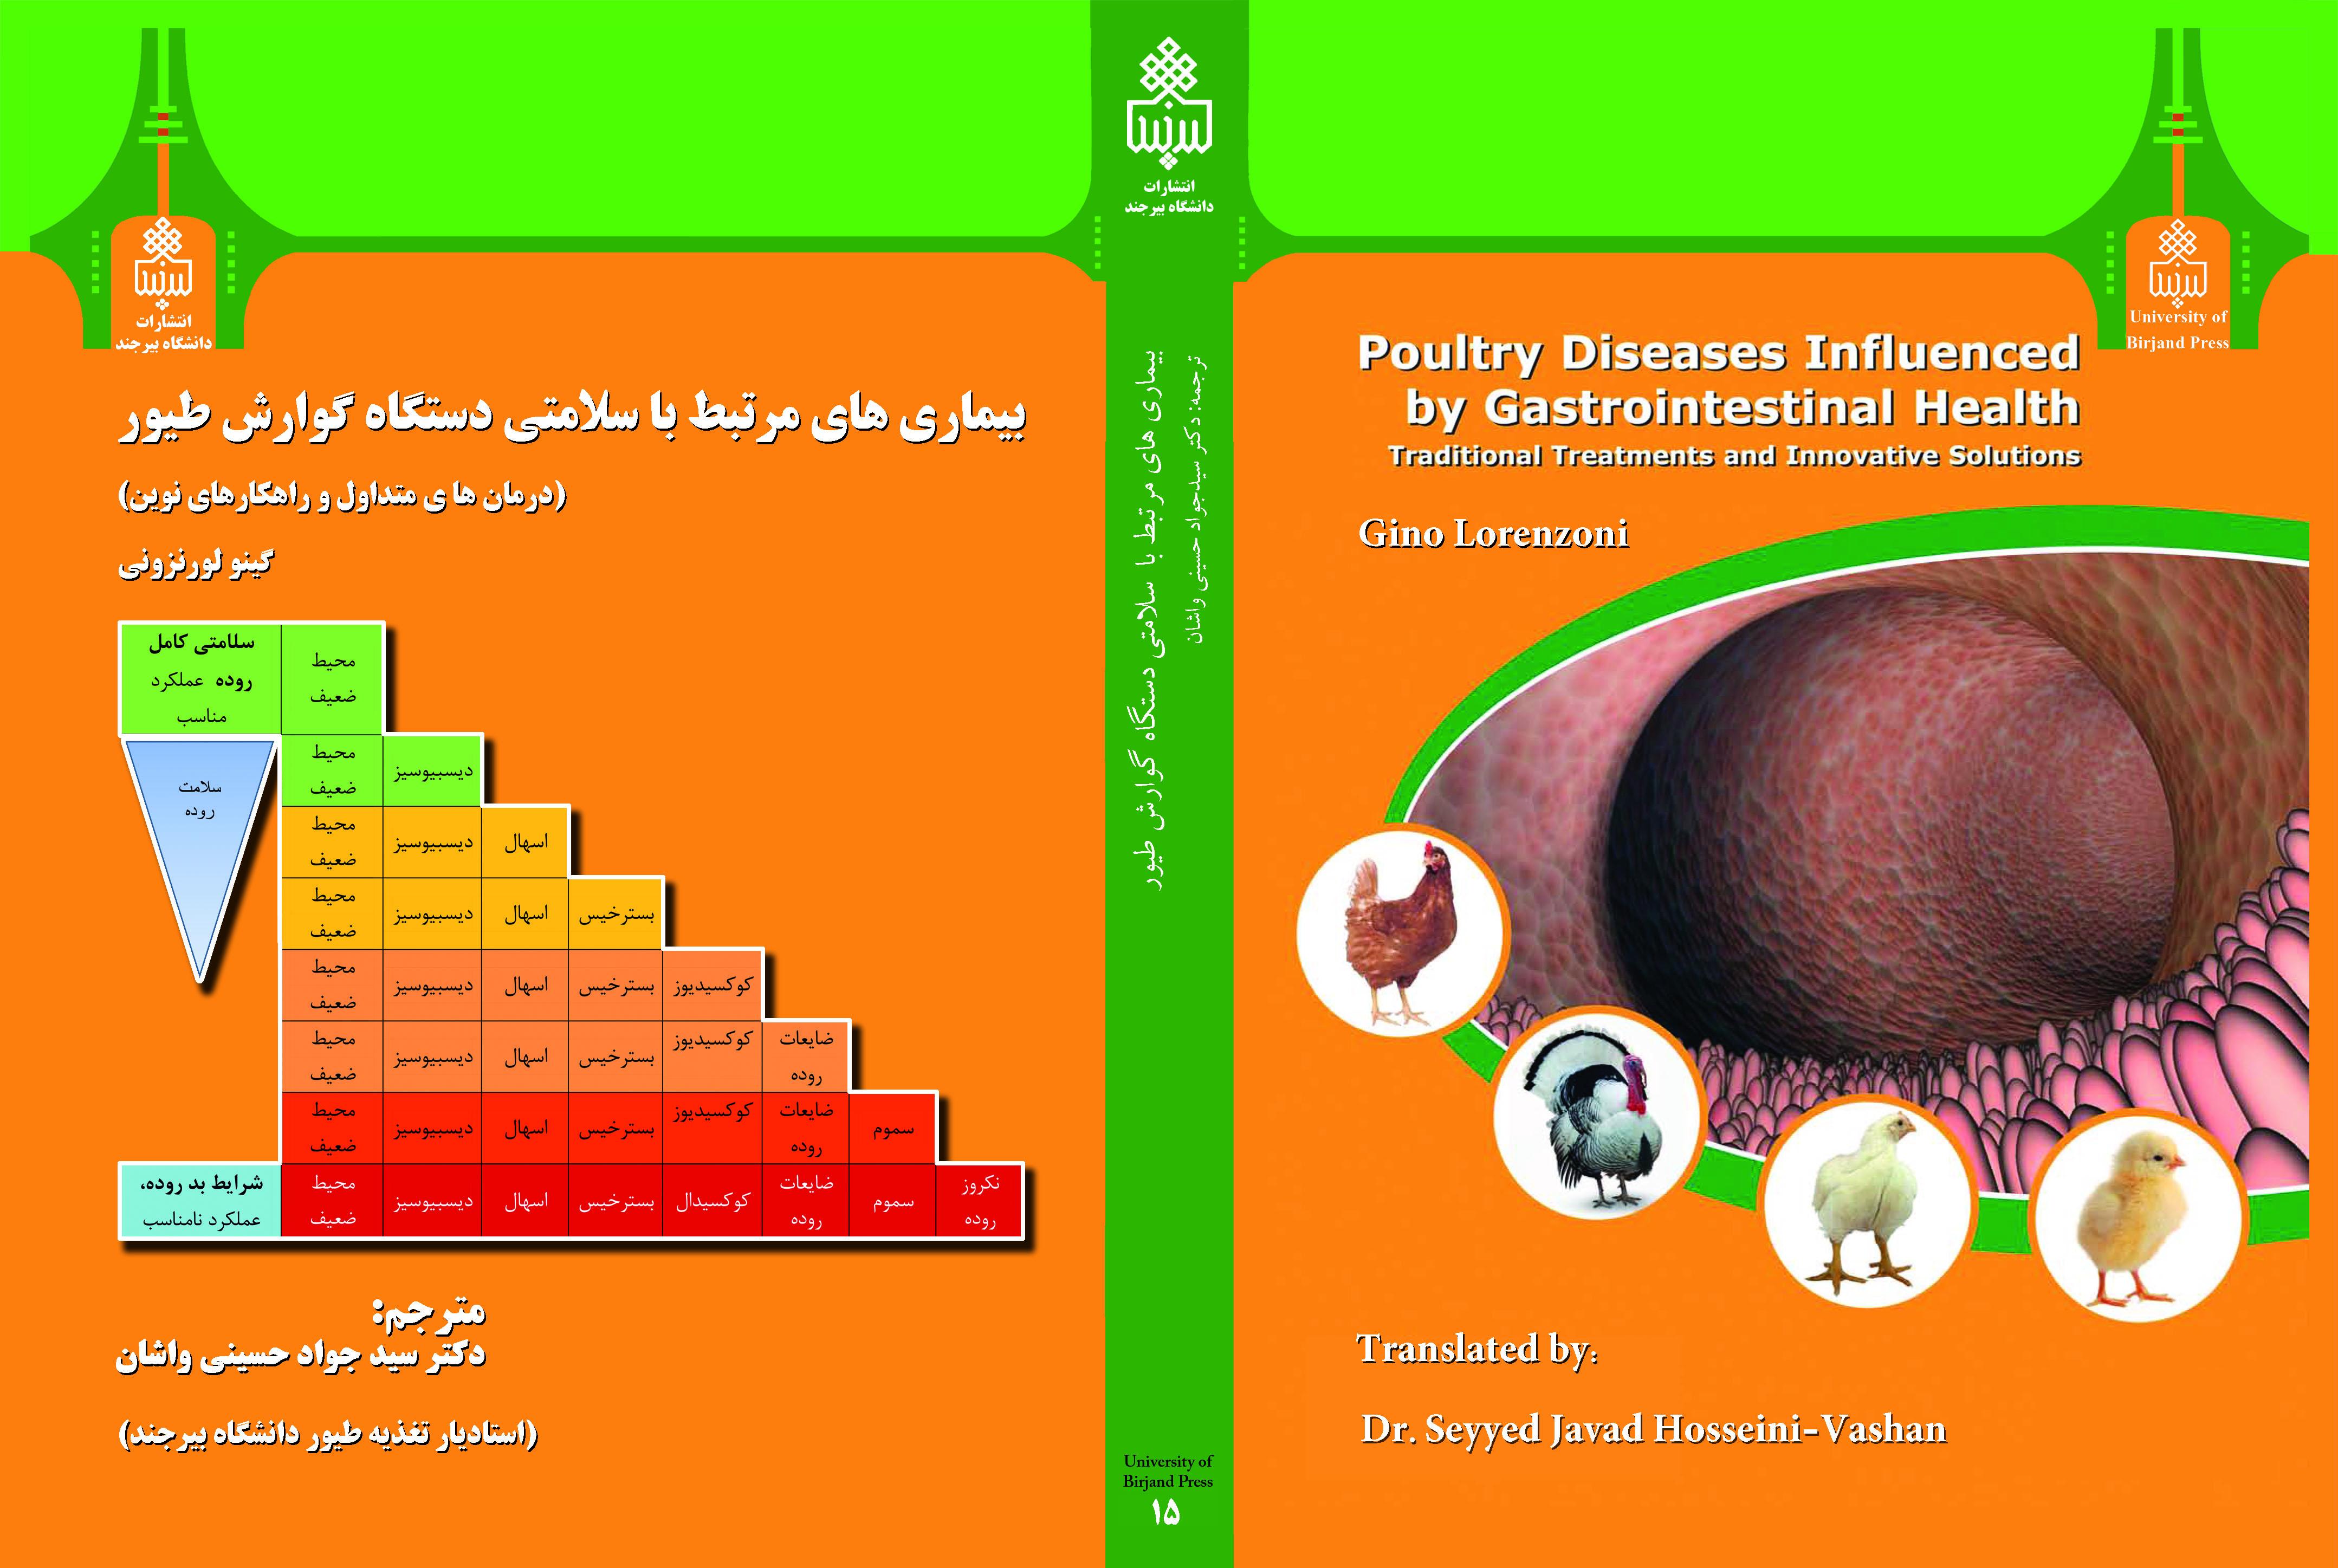 بیماری های مرتبط با سلامتی دستگاه گوارش طیور